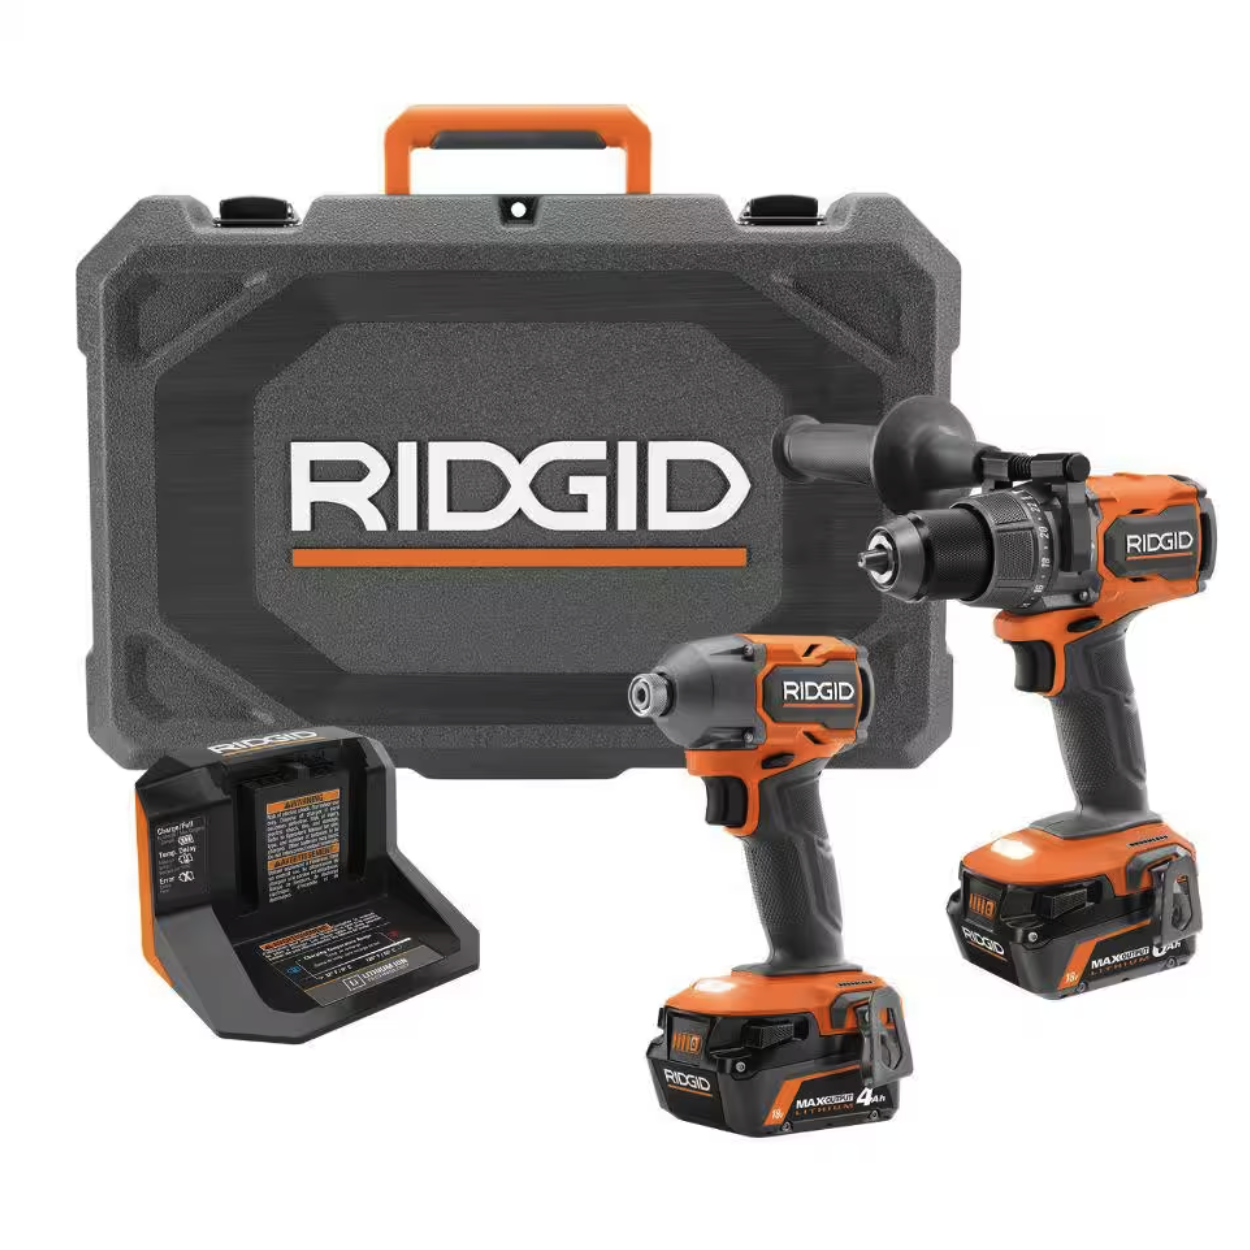 RIDGID: kit combo de 2 herramientas sin escobillas, 18 V